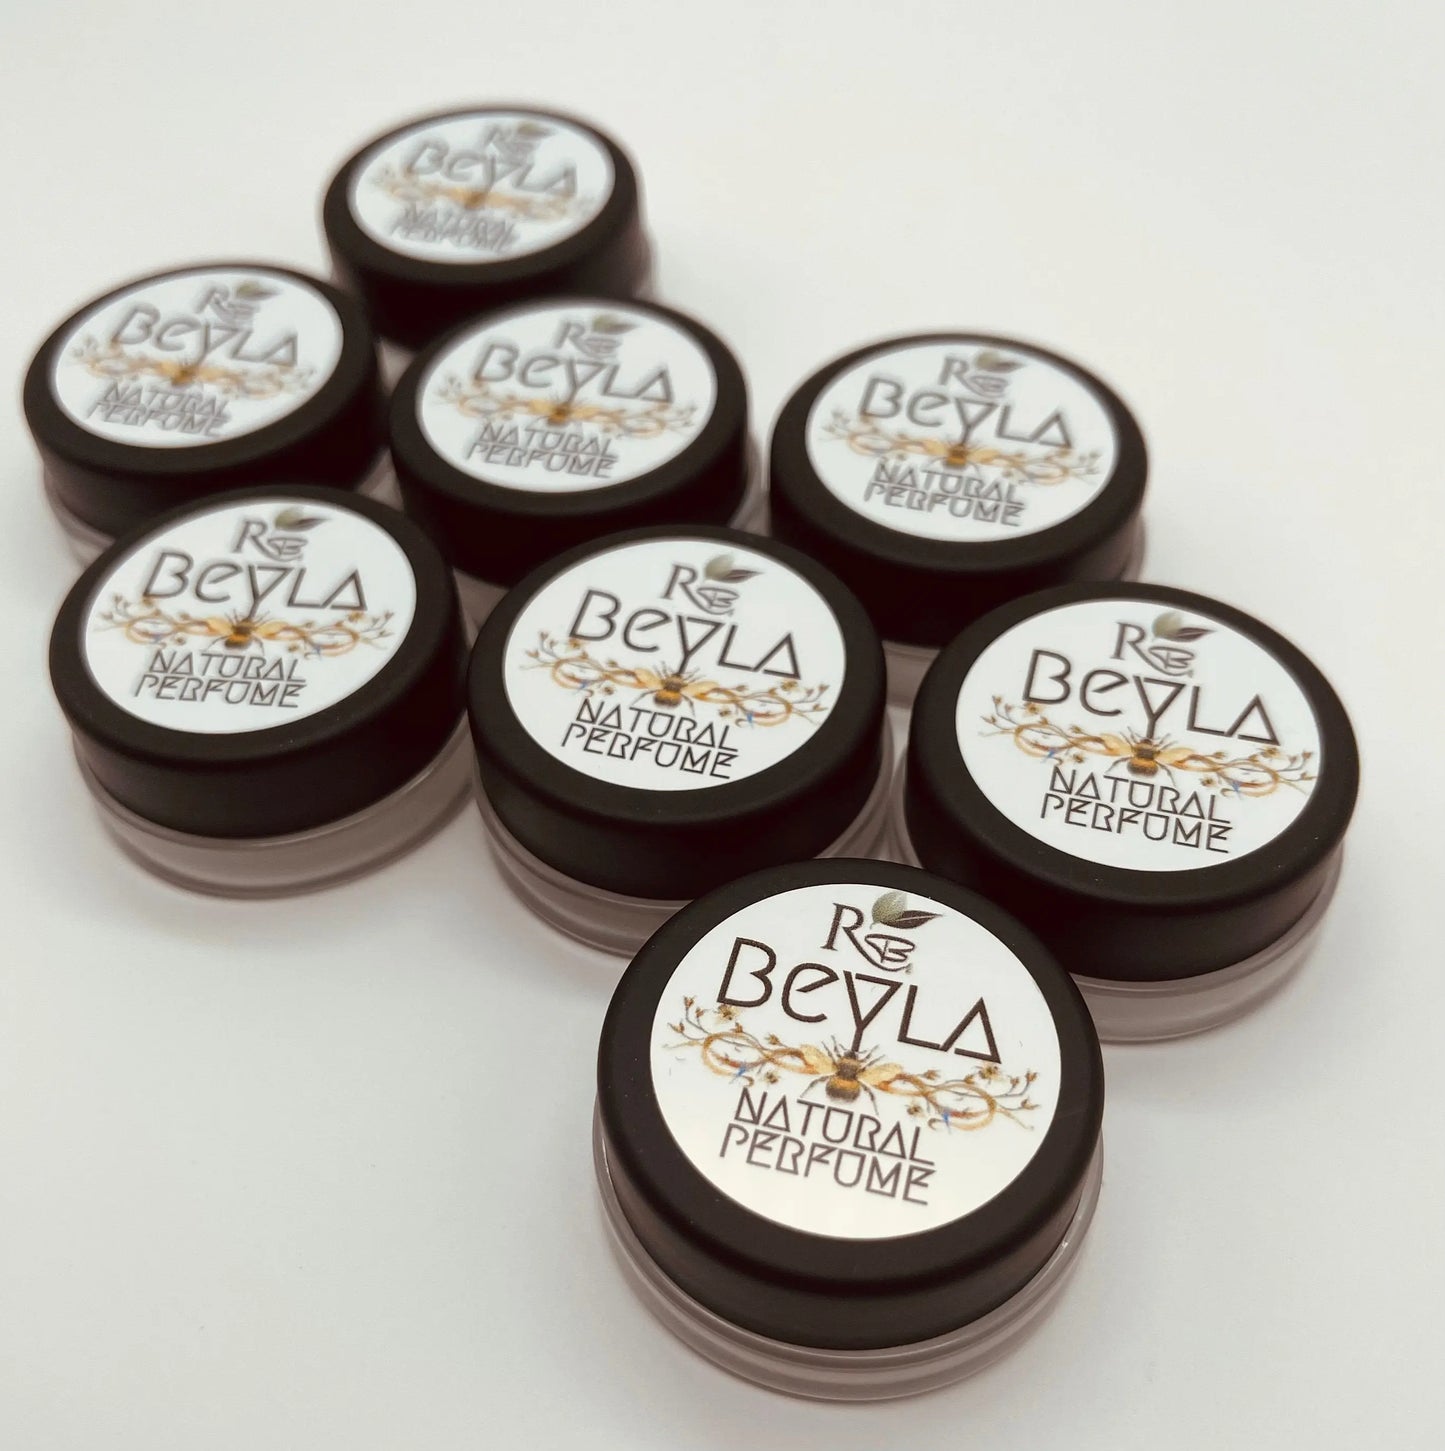 Beyla Solid Natural Perfume-Rainwater Botanicals